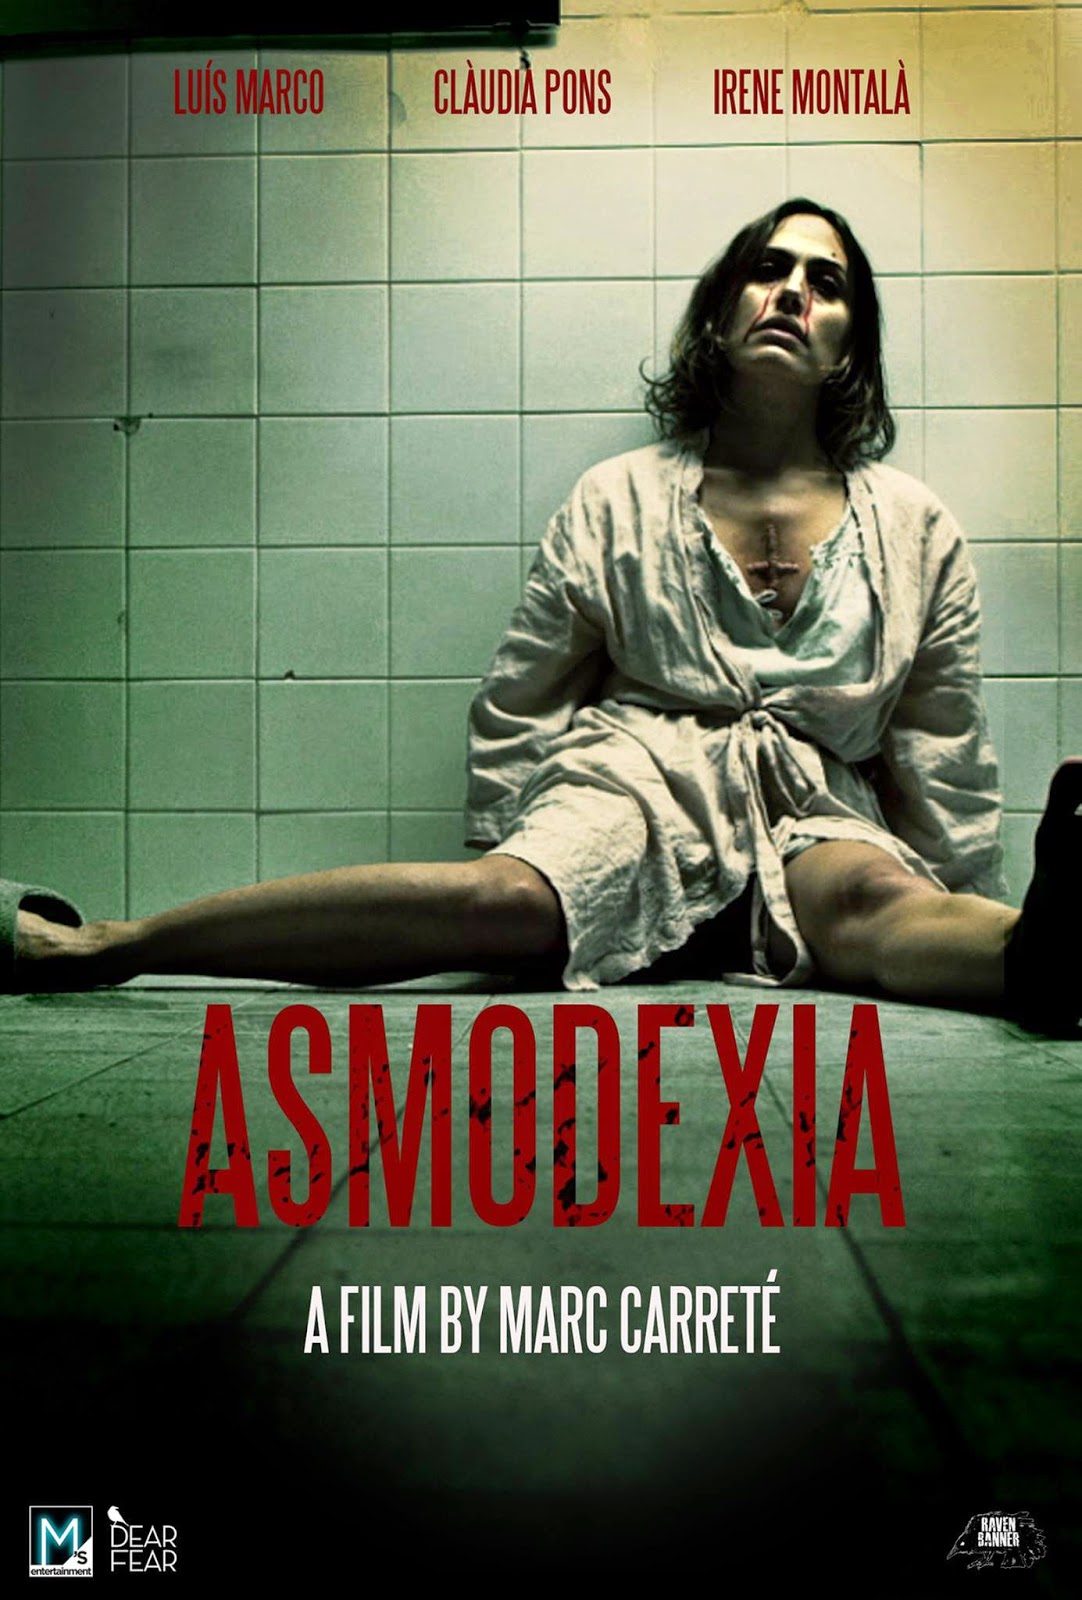 Asmodexia es una pelcula de terror dirigida por Marc Carret, y